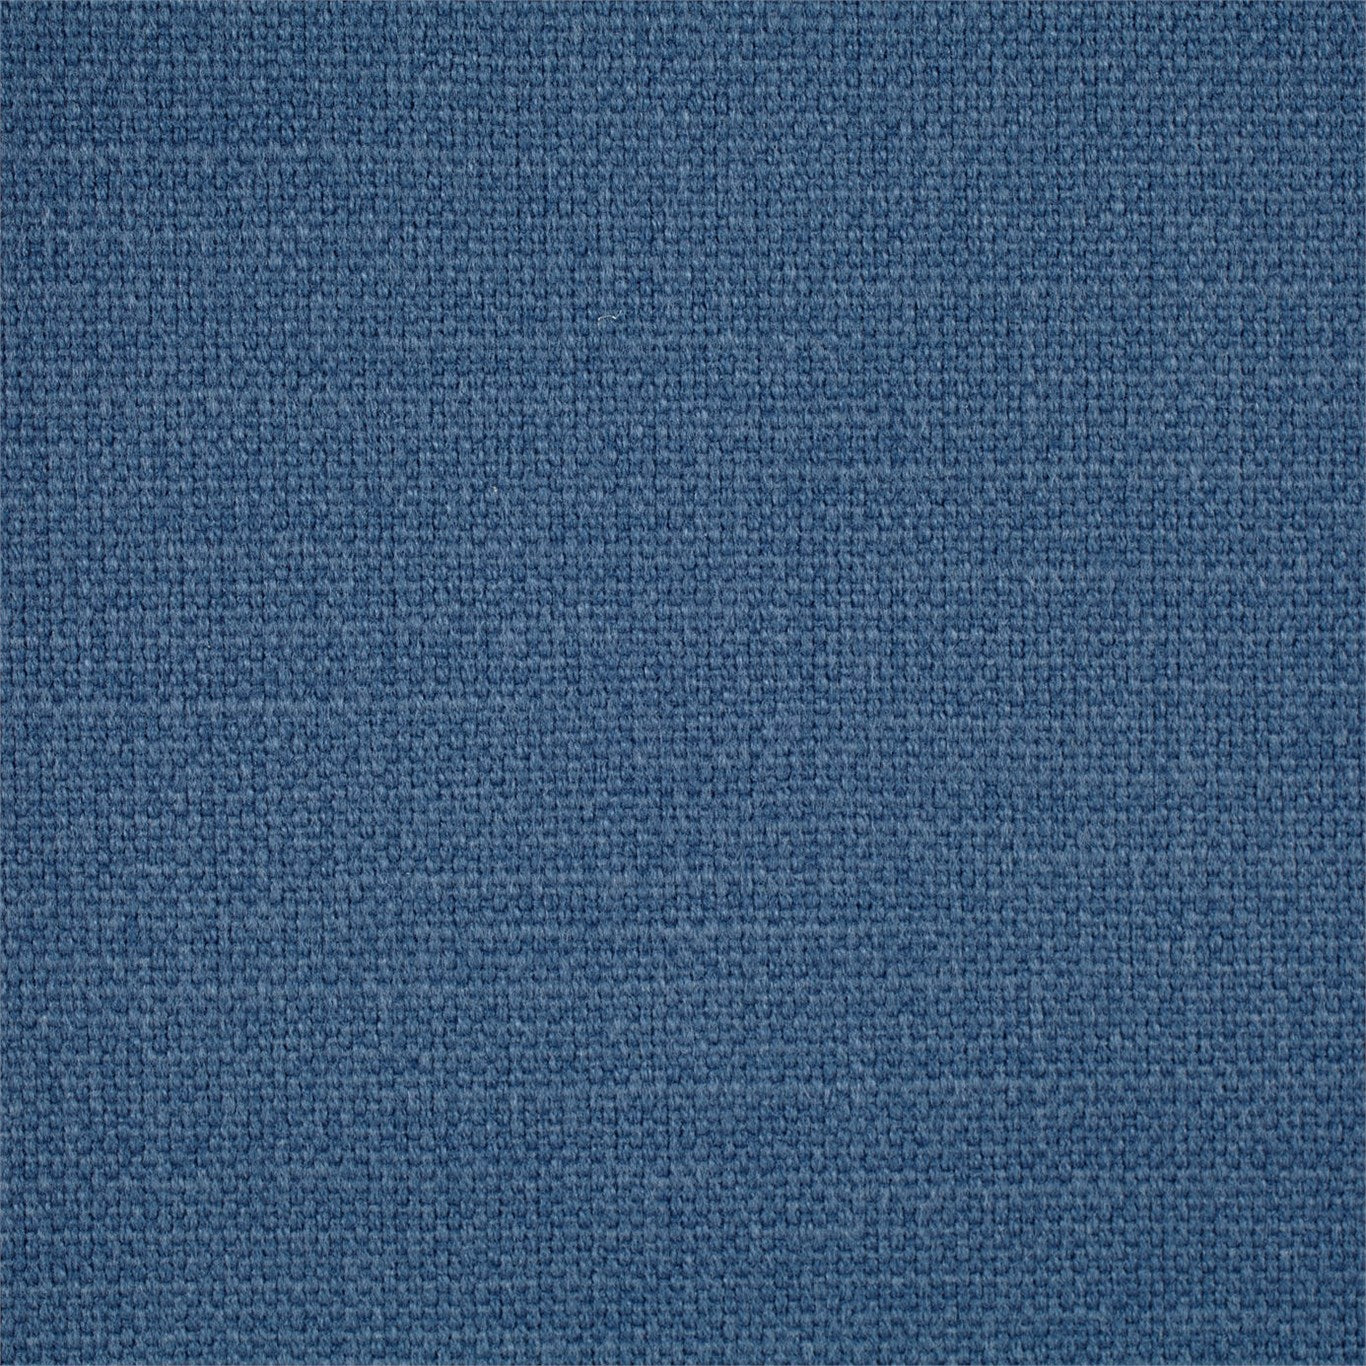 Arley Fabric by Sanderson - DALY245798 - Denim